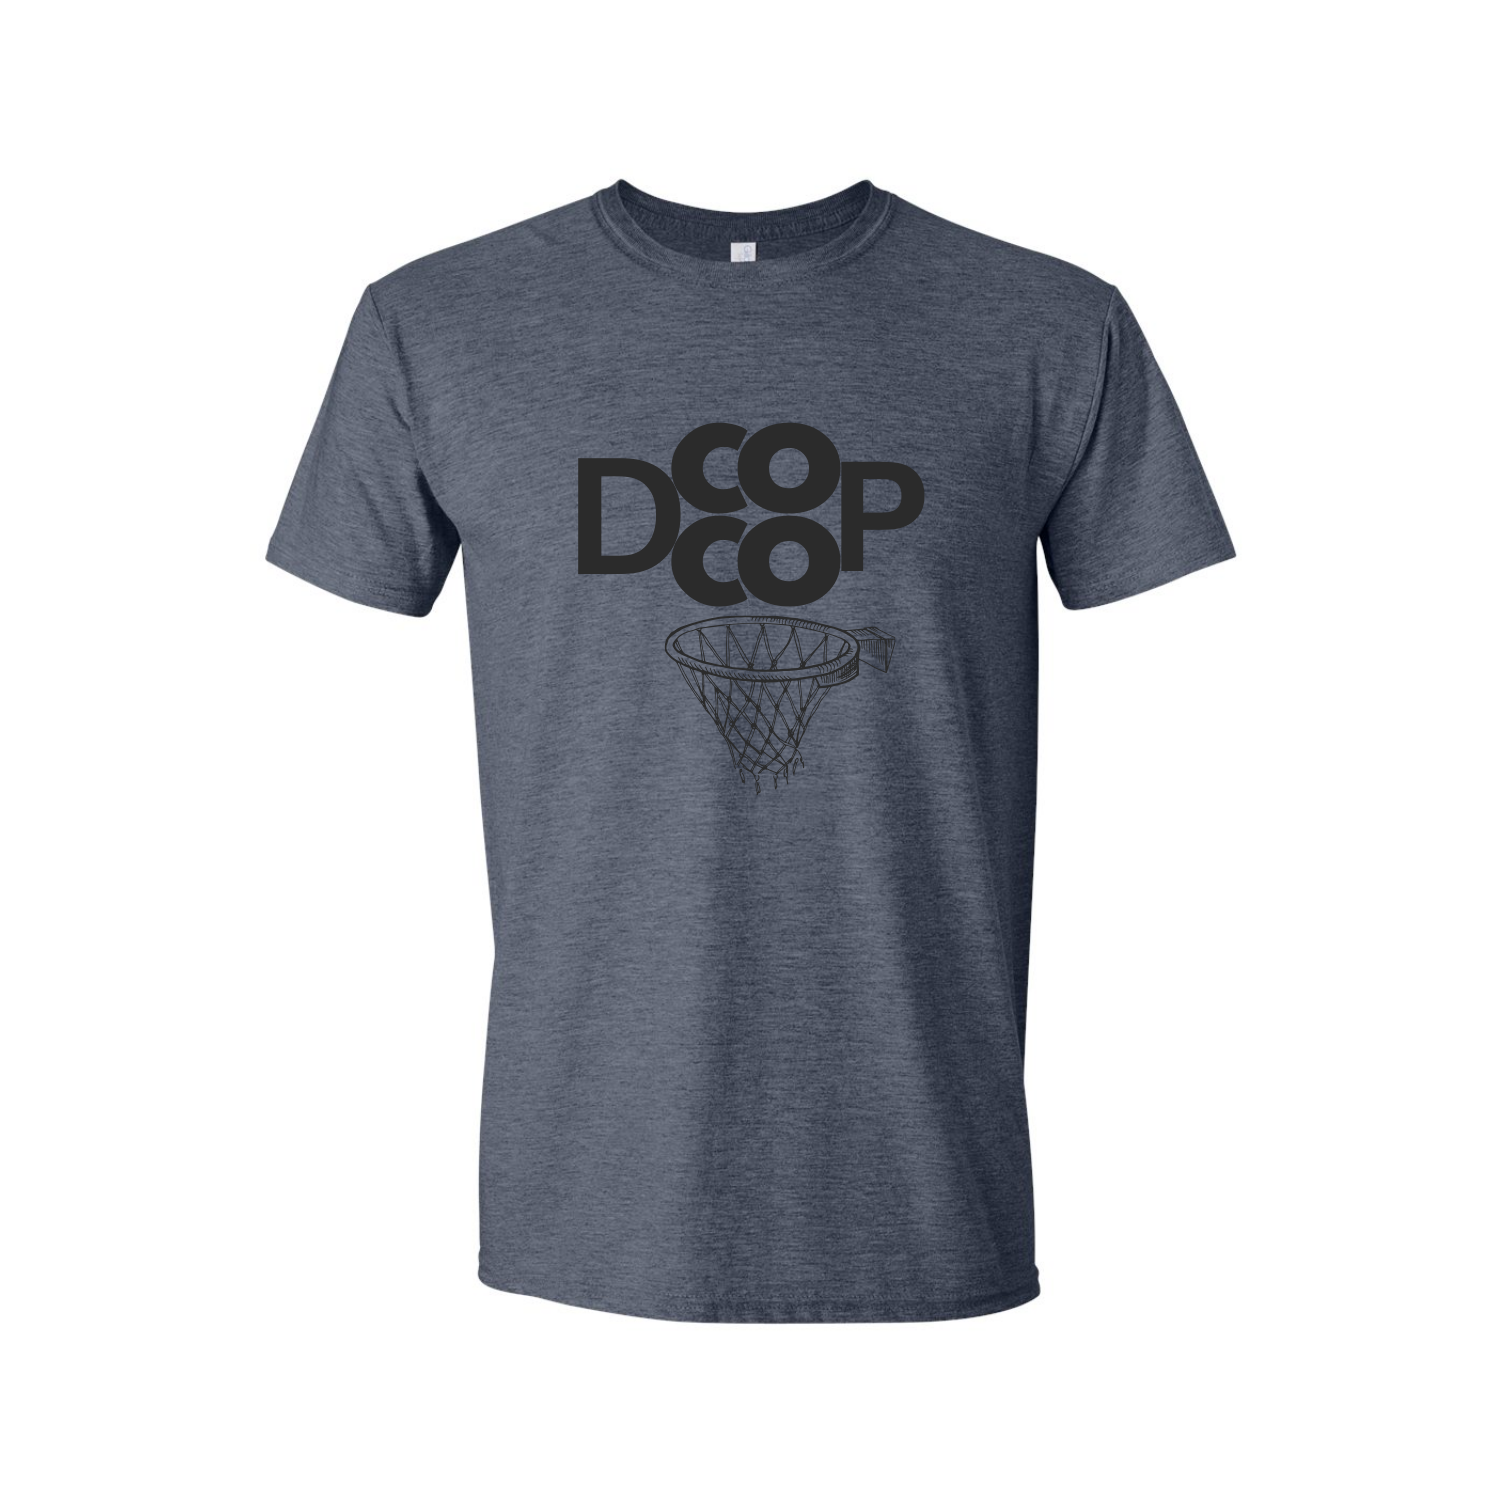 Danny Cooper Basketball - DCOOP Tee